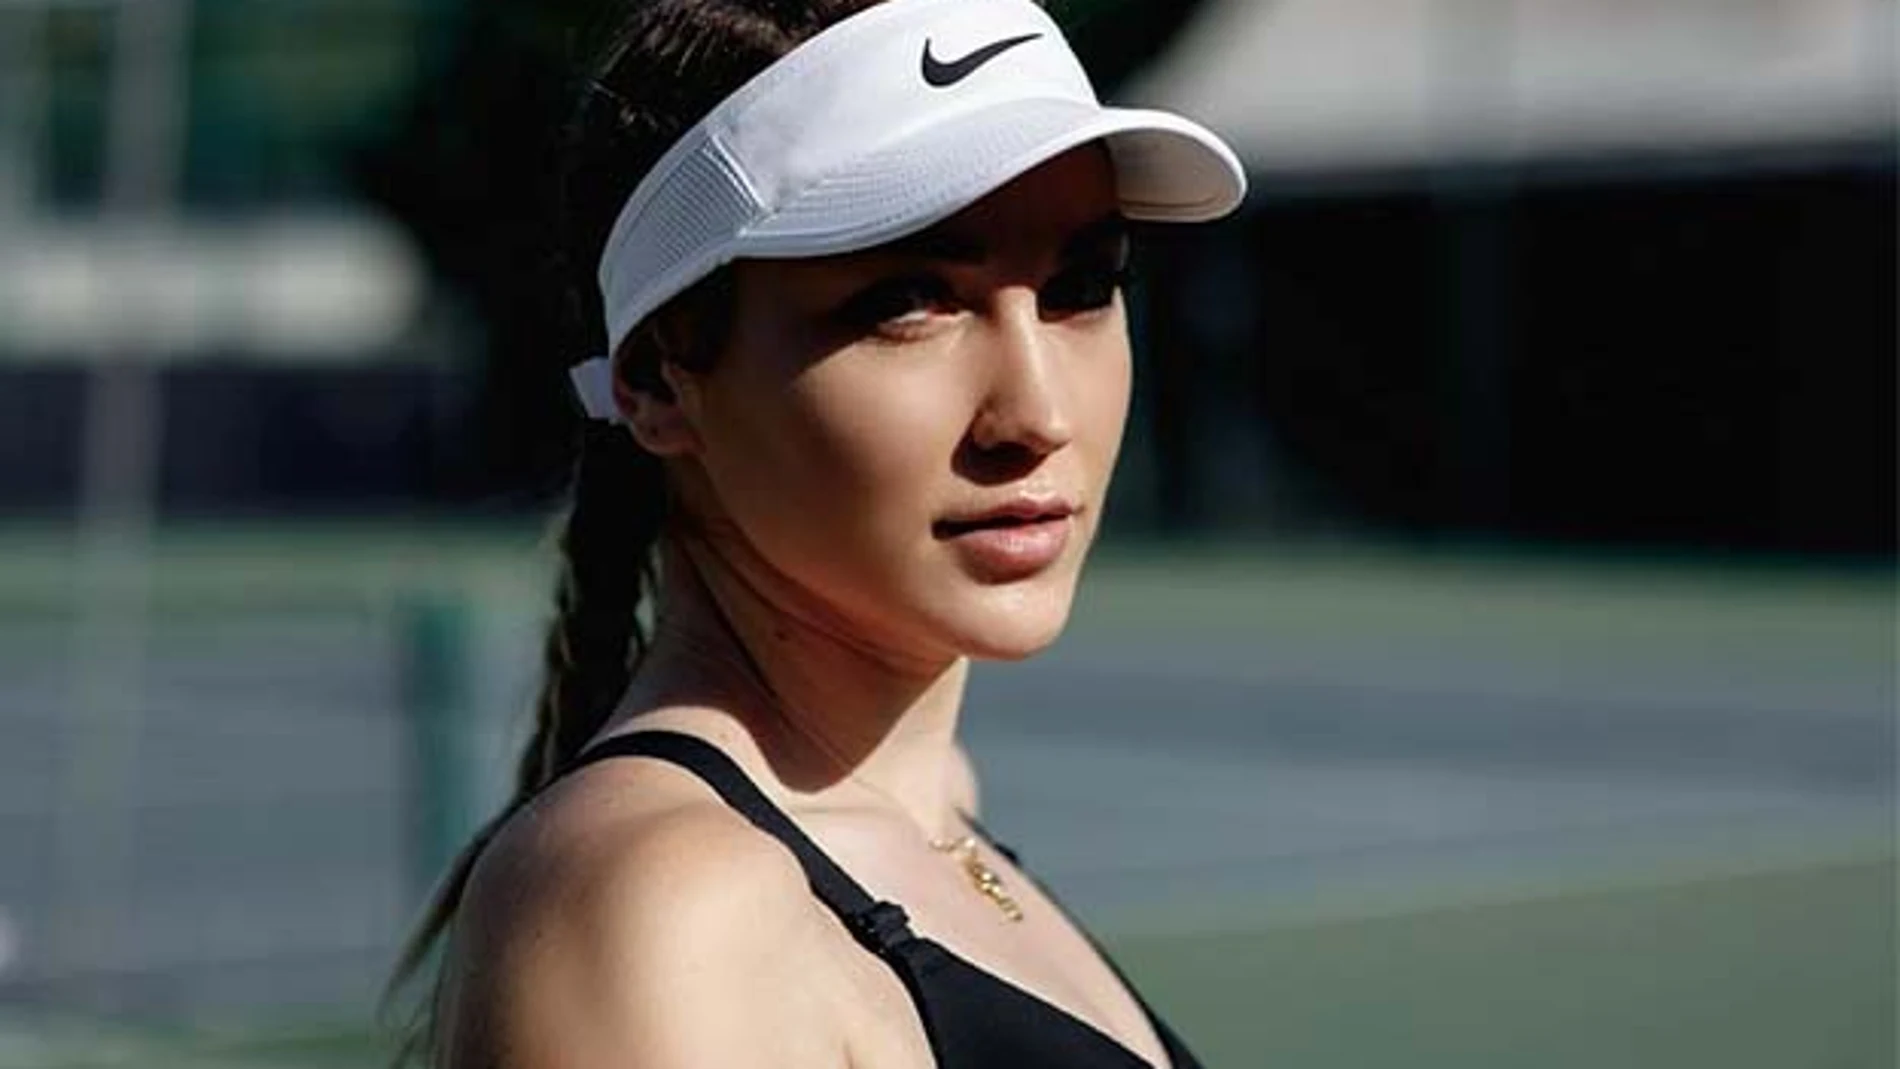 La tenista Natela Dzalamidze ha cambiado la nacionalidad rusa por la georgiana para poder jugar en Wimbledon.